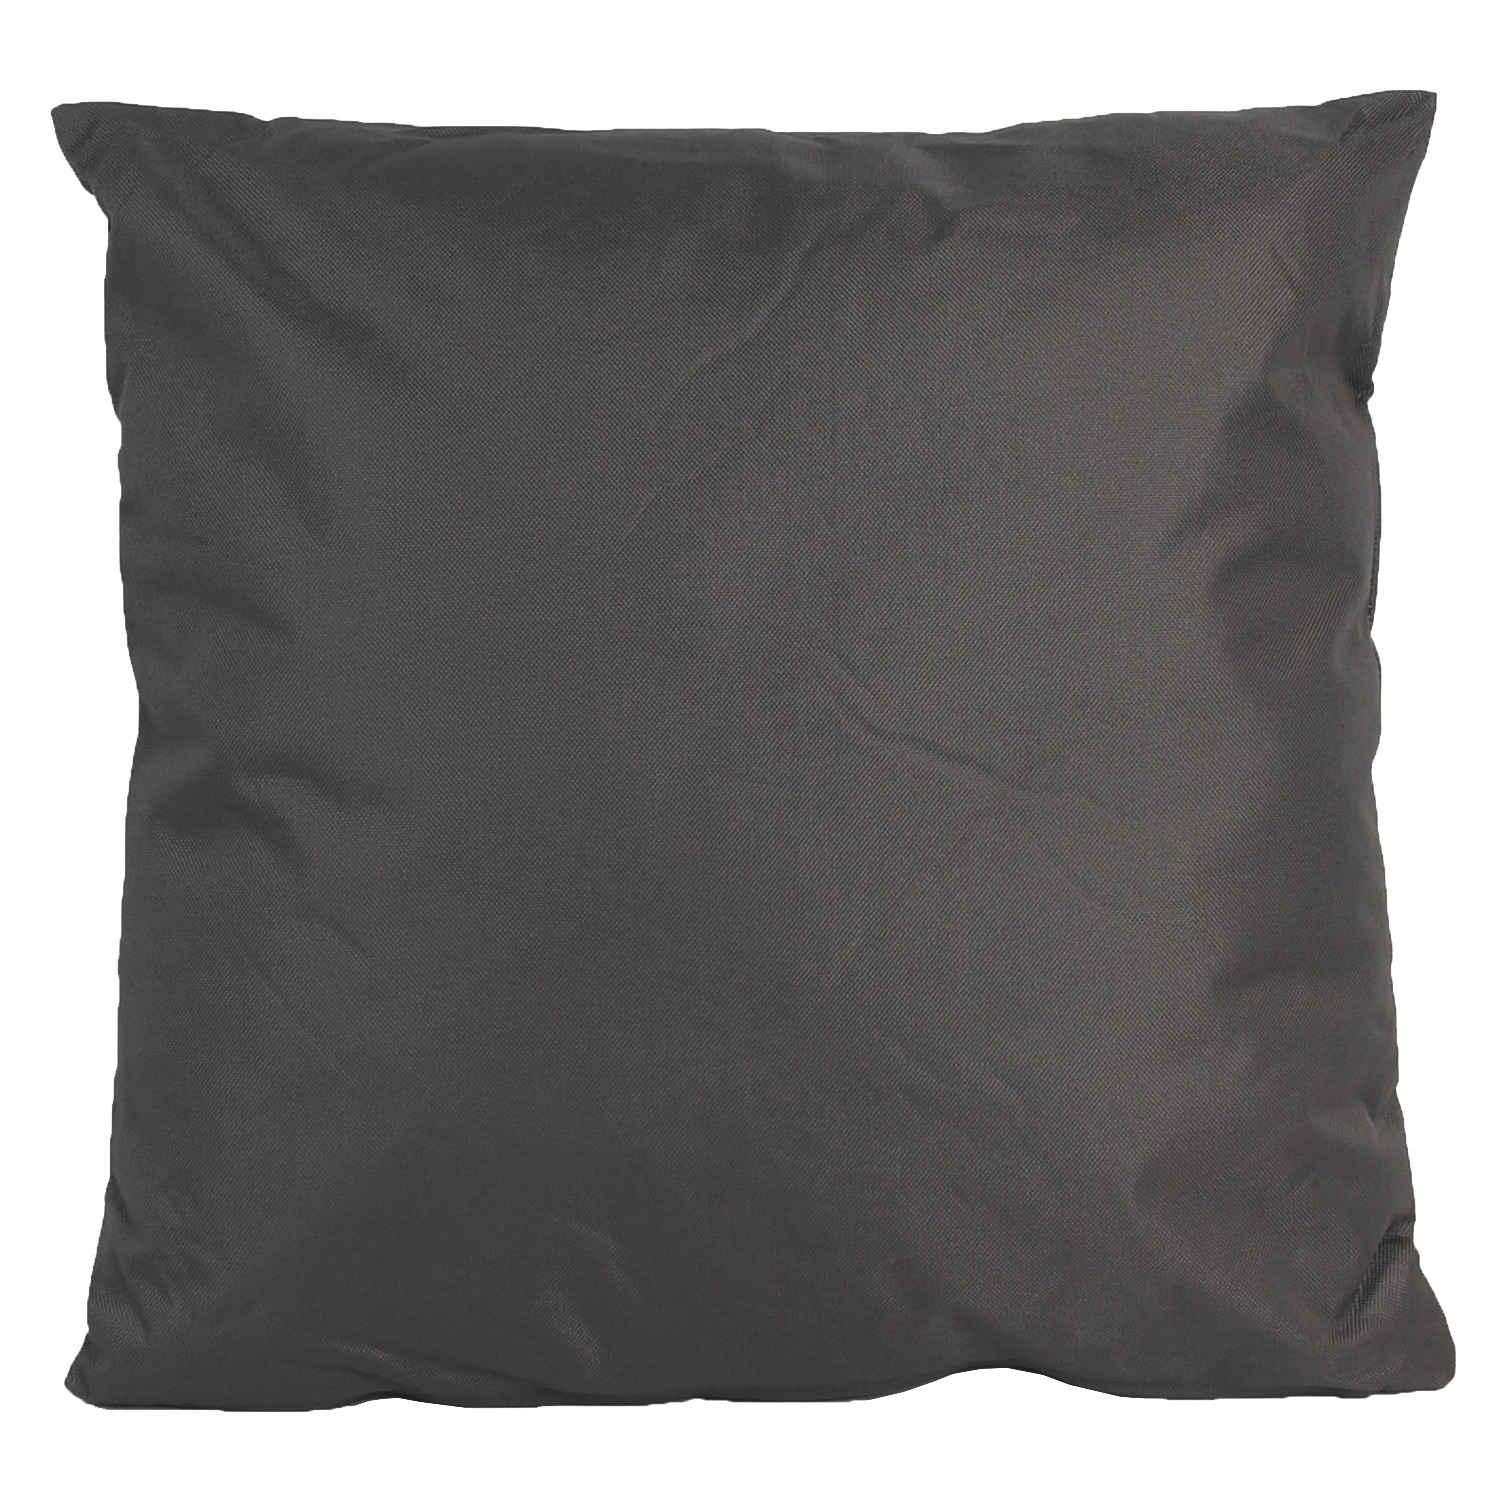 1x Grote bank-sier kussens voor binnen en buiten in de kleur antraciet grijs 60 x 60 cm